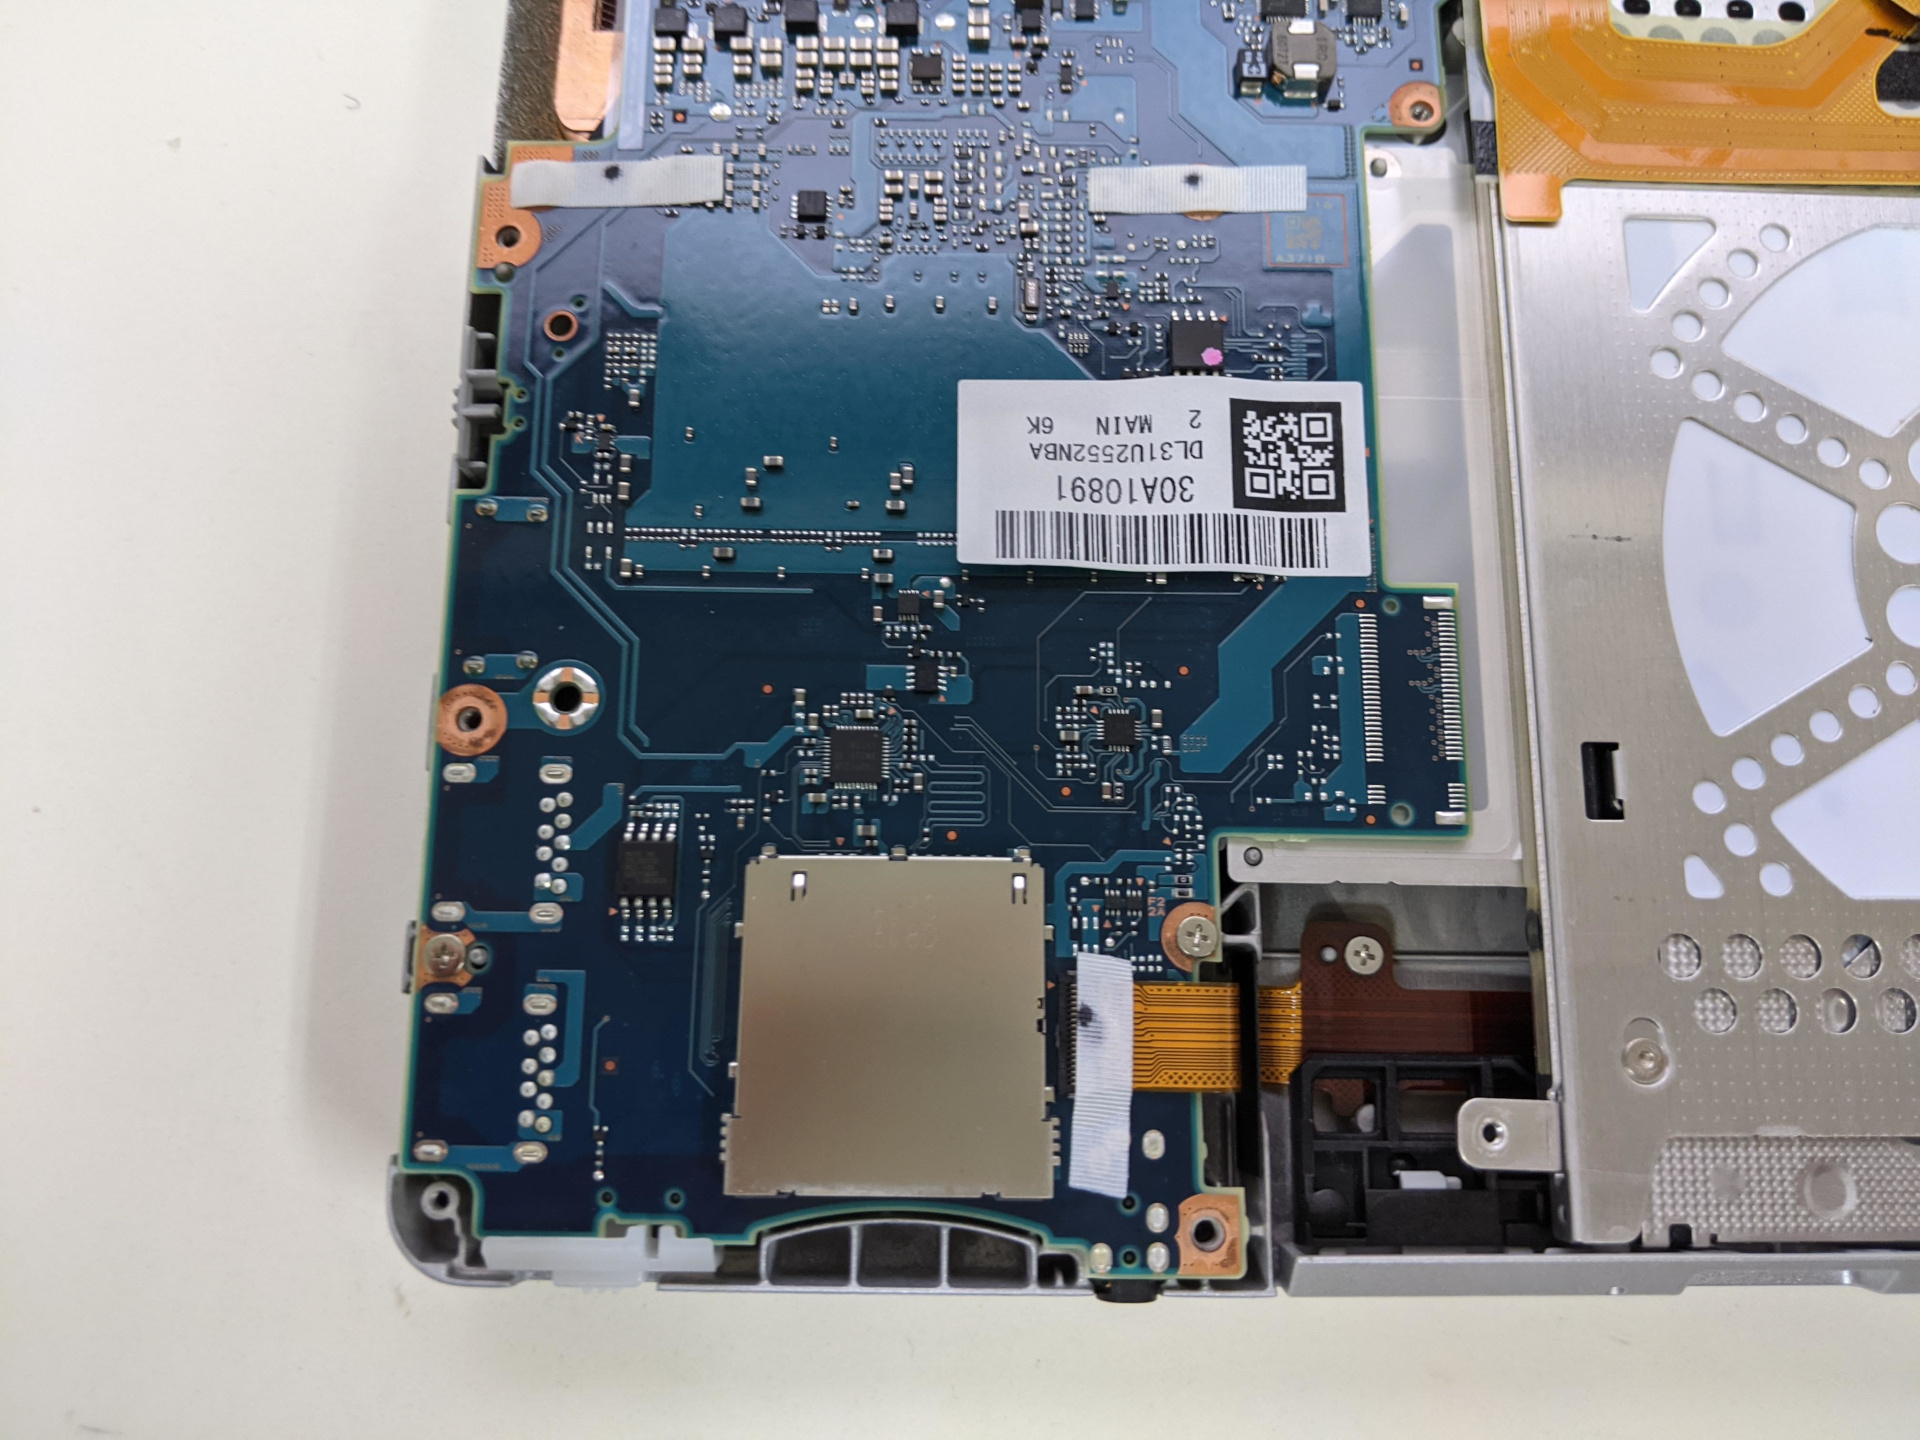 M.2 SSDはコネクターがないので搭載できません